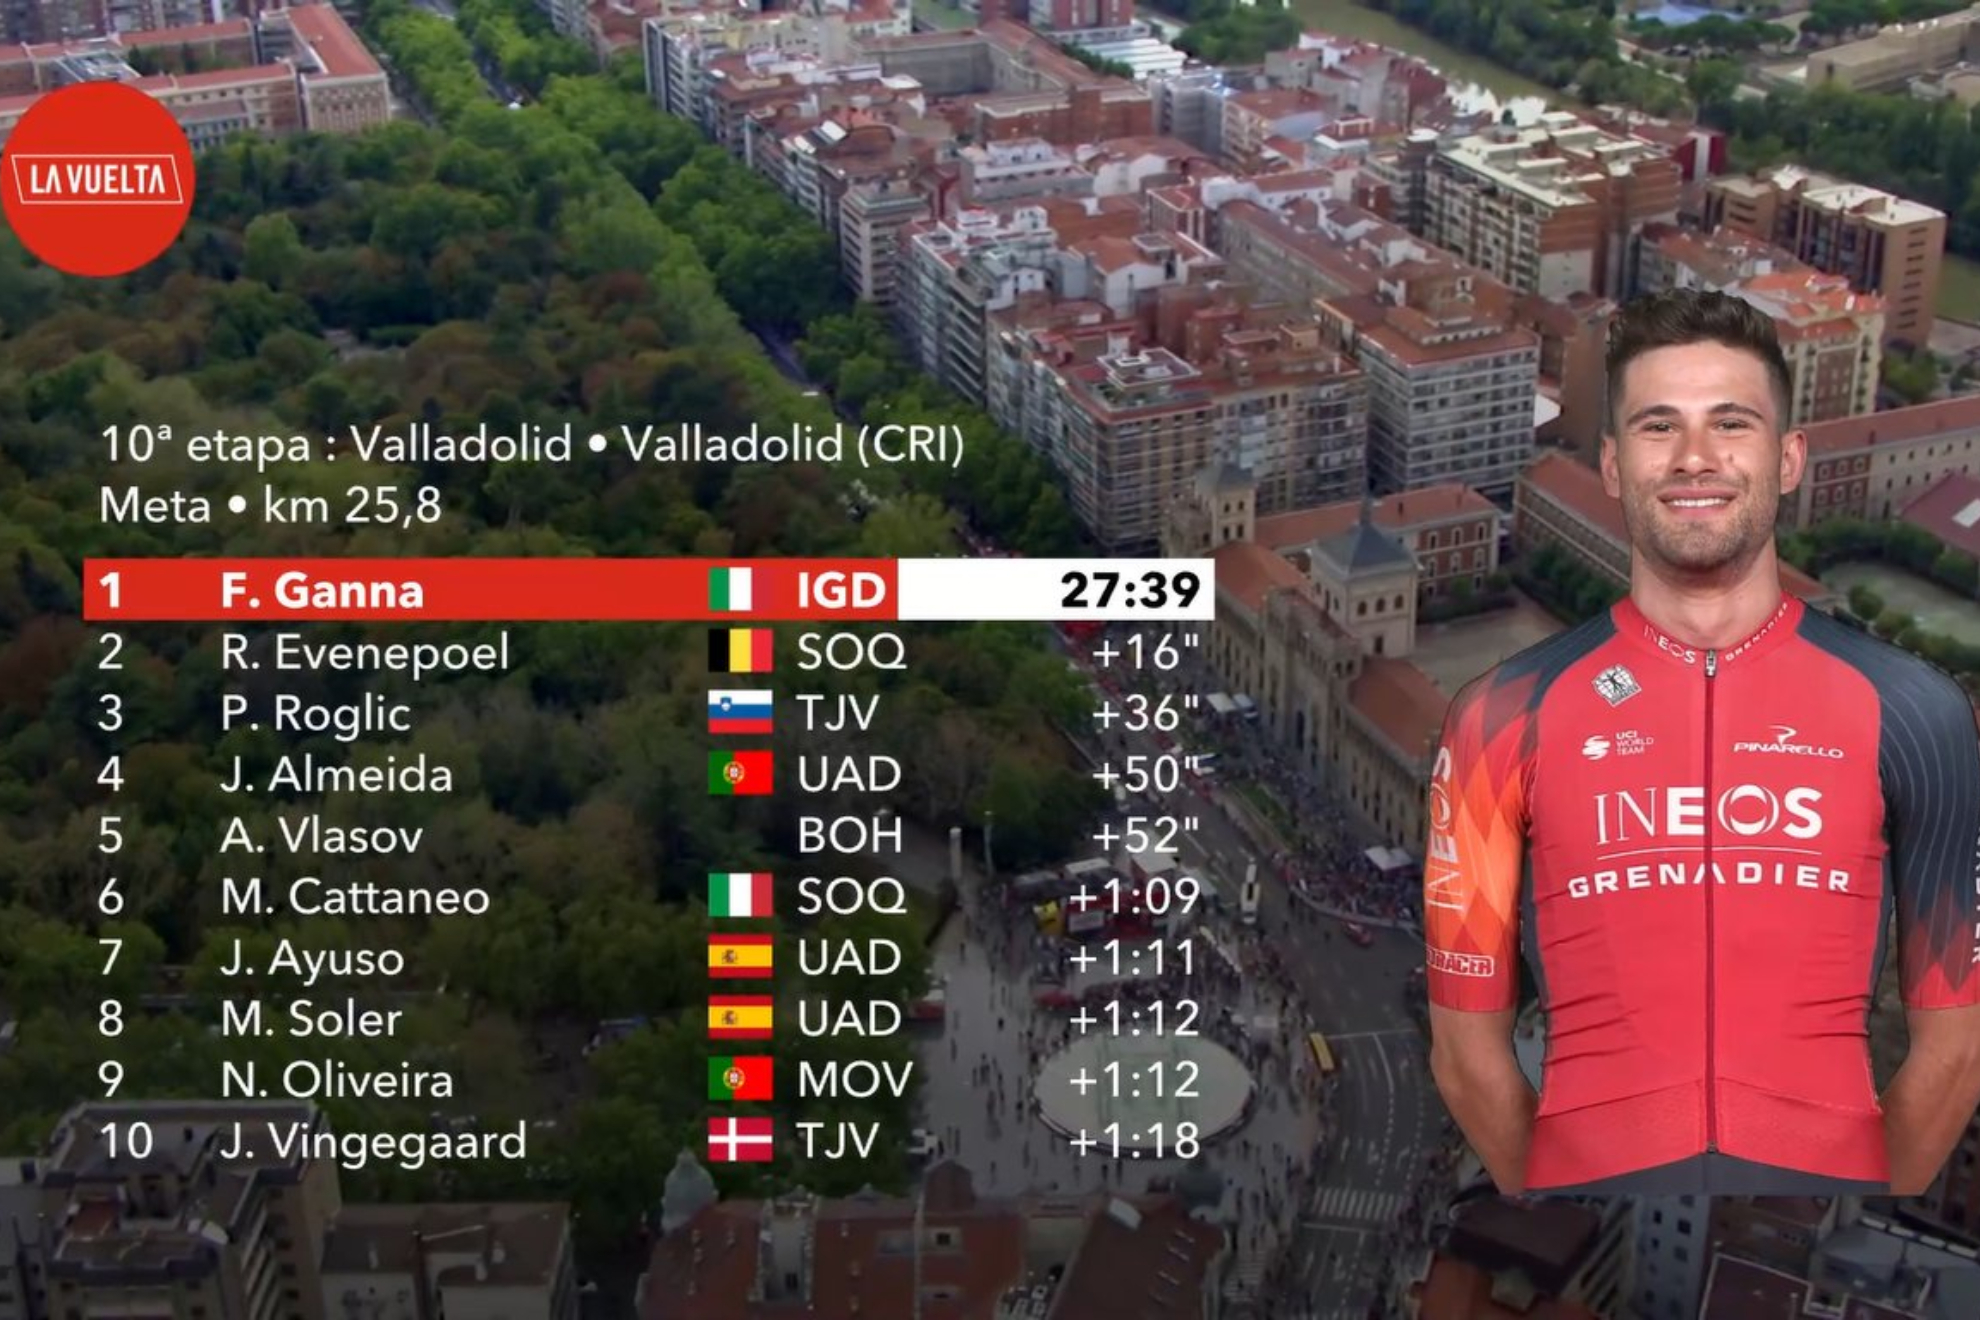 Resultado y clasificaciones tras la etapa 10: Kuss sale de Valladolid de rojo